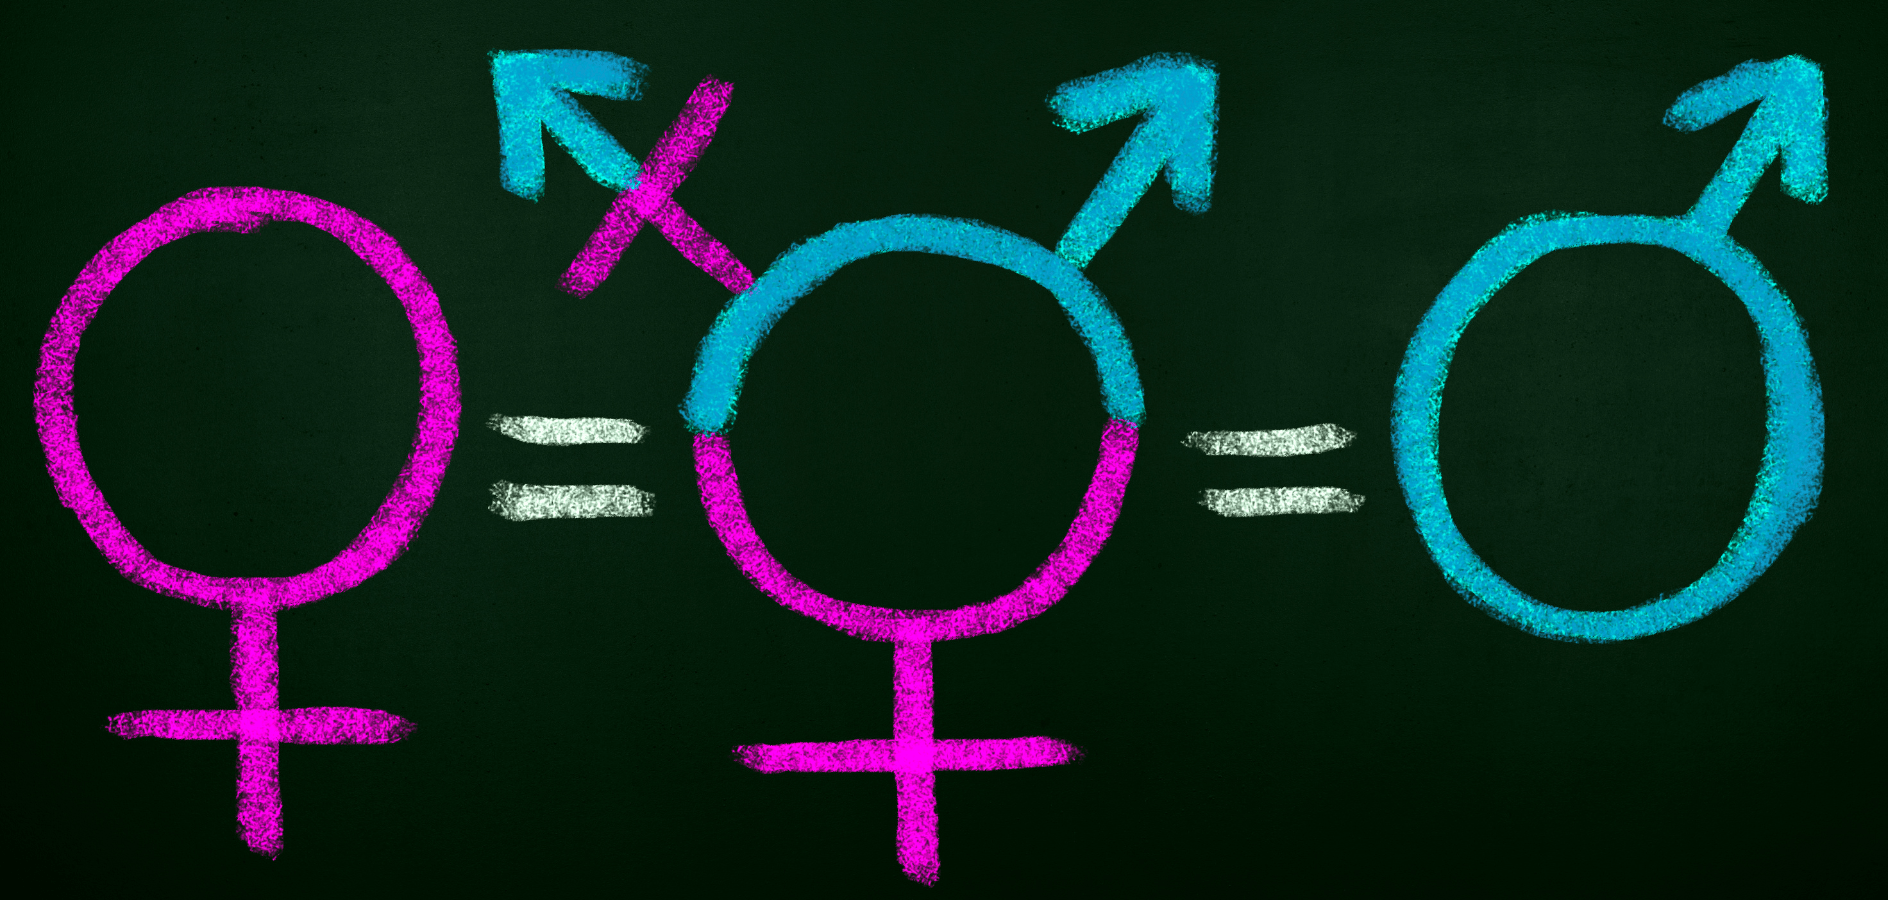 Vols assessorament gratuït en matèria d’igualtat de gènere i diversitat? Inscriu-te a la jornada virtual de presentació de l’Oficina tècnica